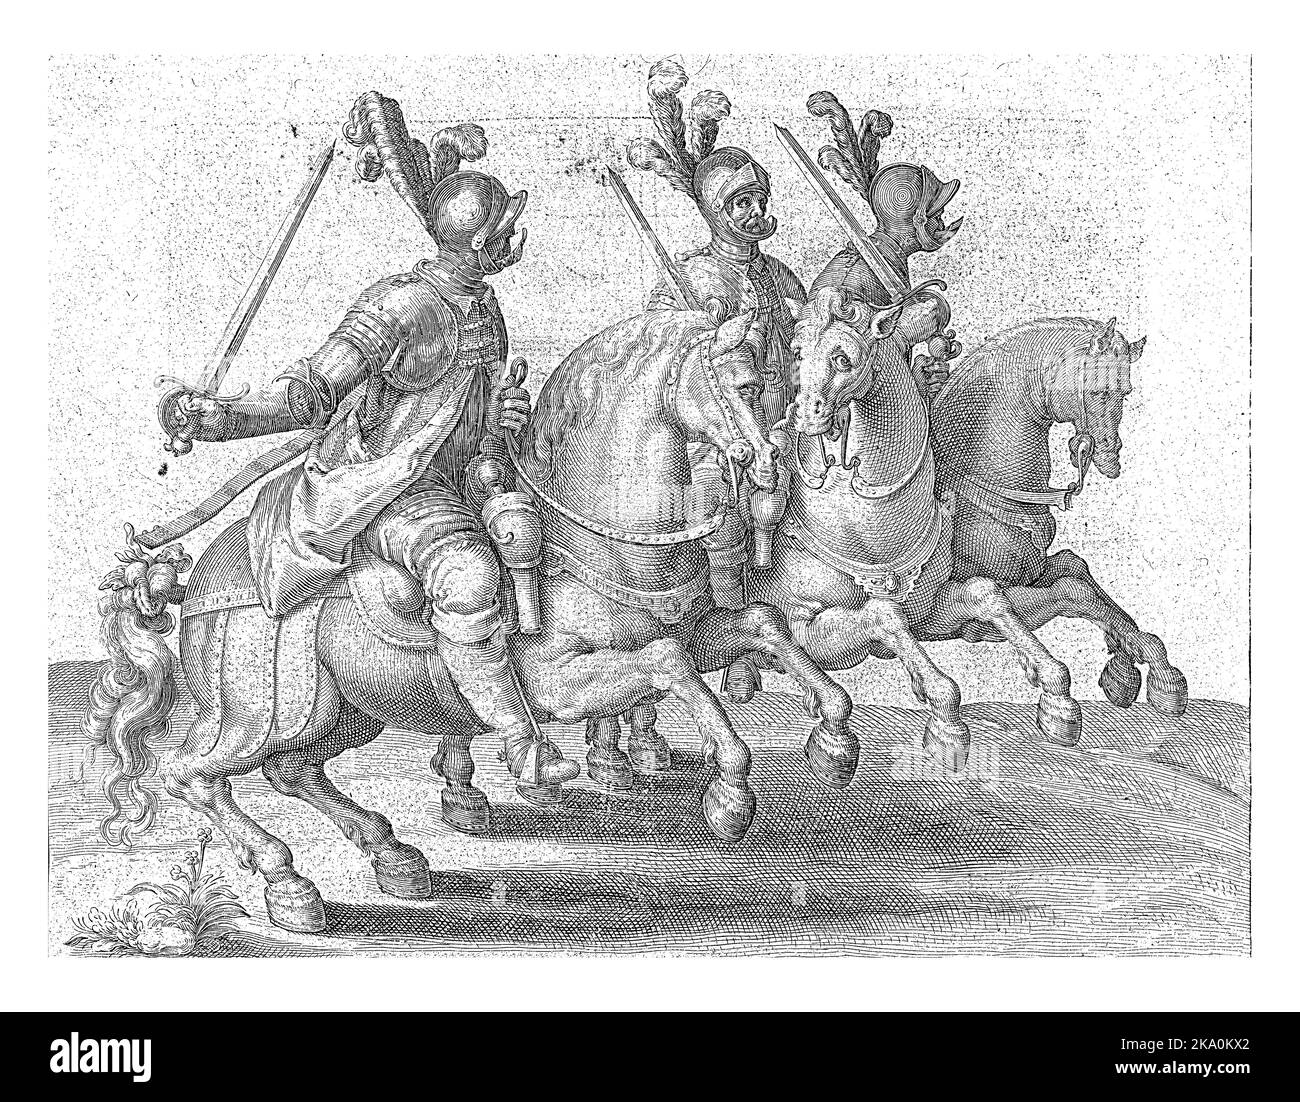 Drei gepanzerte Männer auf dem Pferderücken, die nach rechts reiten und jeweils ein gezogenes Schwert in der rechten Hand halten. Stockfoto